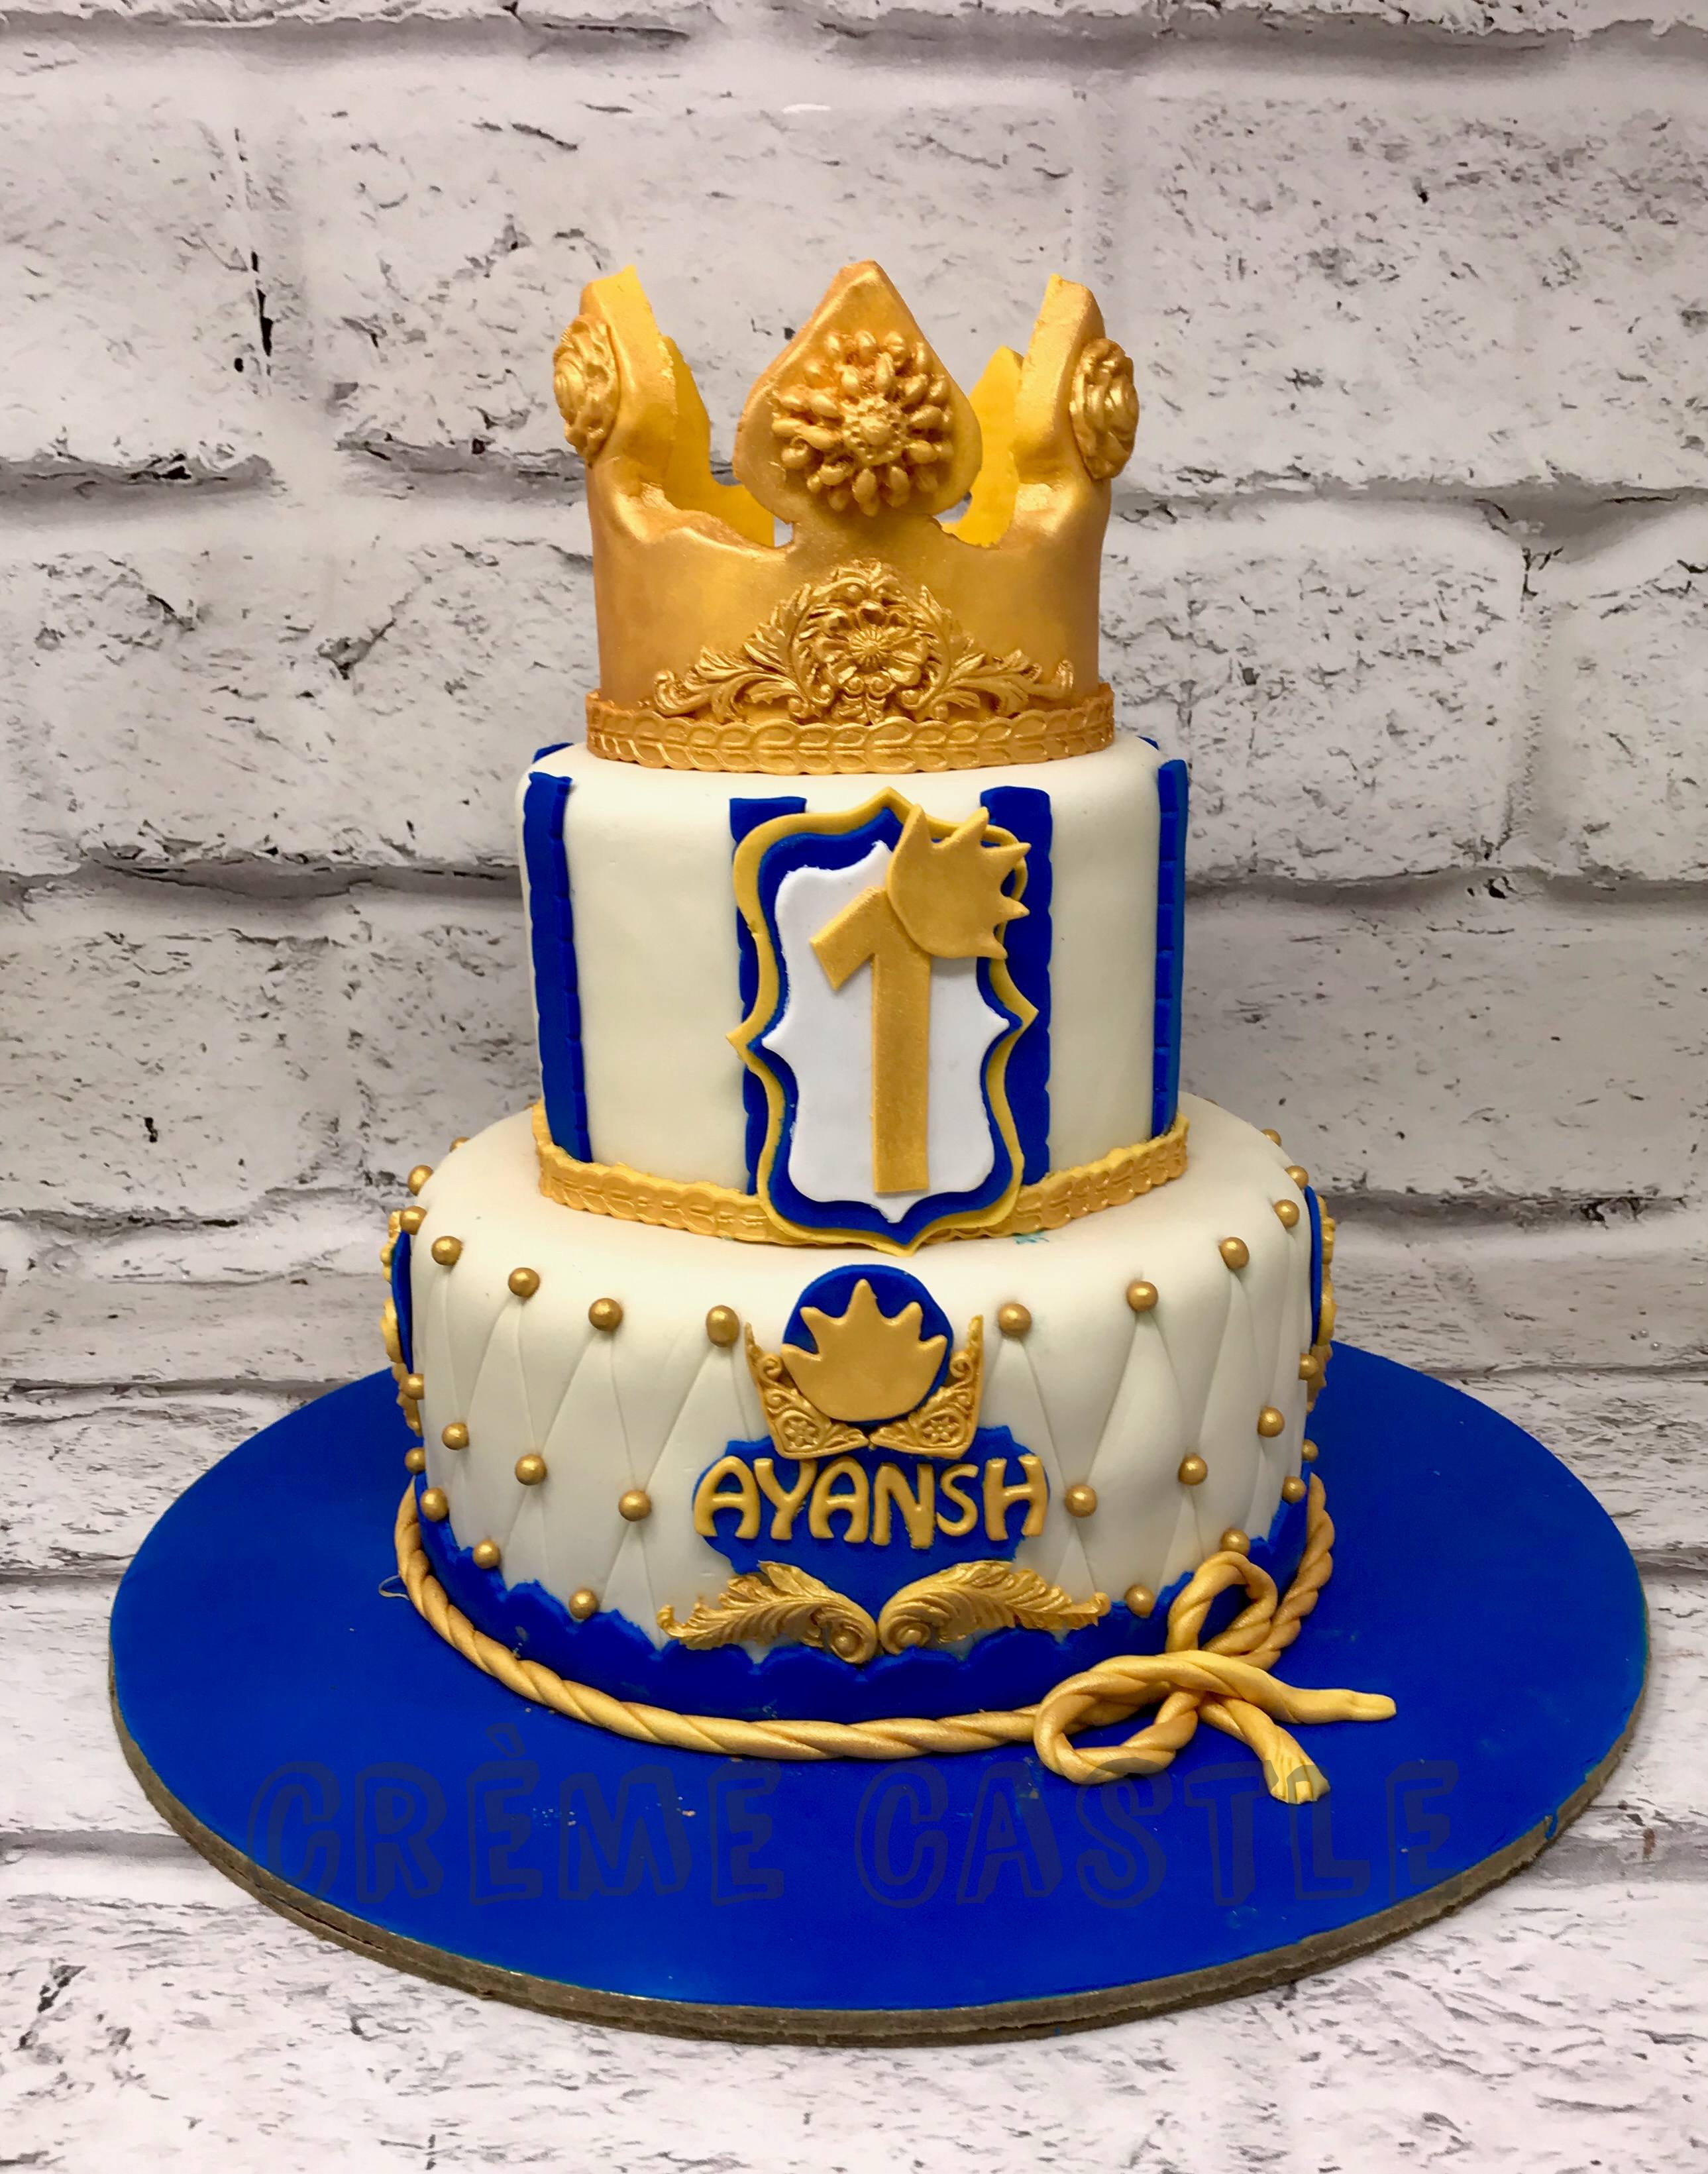 Egyptian King Theme Cake